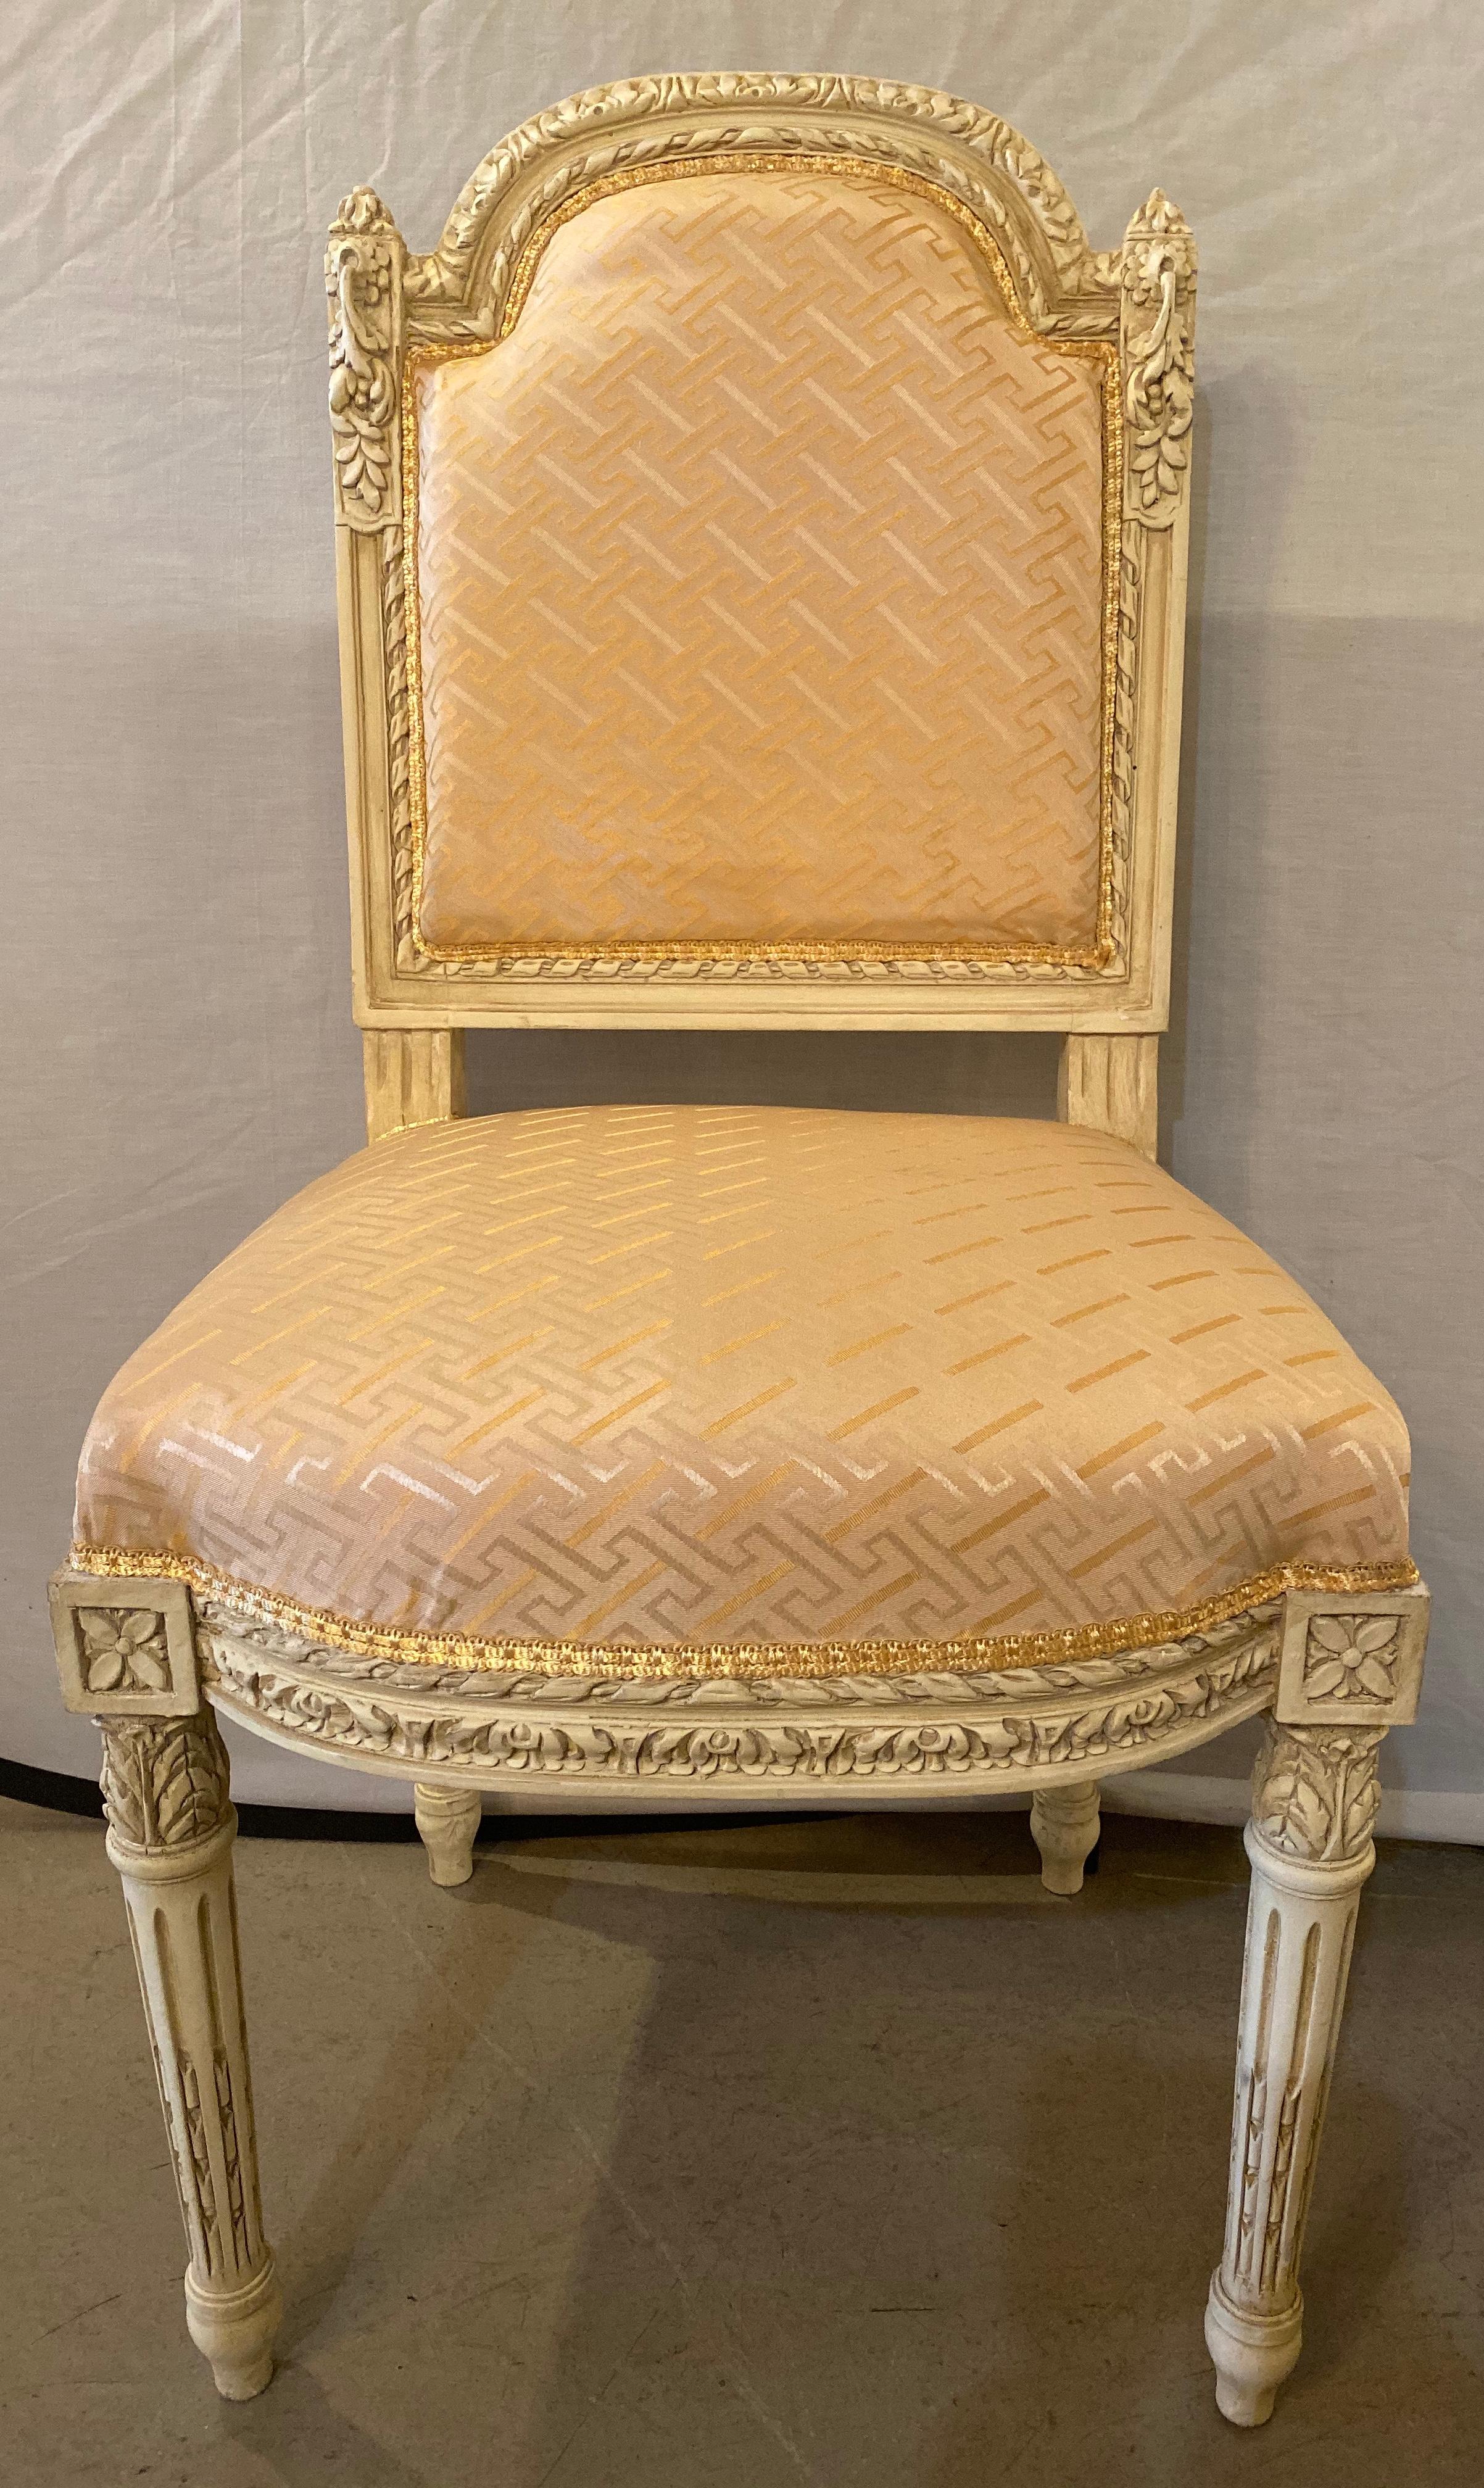 10 Schwedische Louis XVI Stil Esszimmer / Beistellstühle gemalt geschnitzten Rahmen in einem Lachs satiniert neuen Stoff
Dieser atemberaubende Satz von 10 Esszimmerstühlen wurde vollständig aufgearbeitet und jeder ist mit einem feinen neuen Stoff